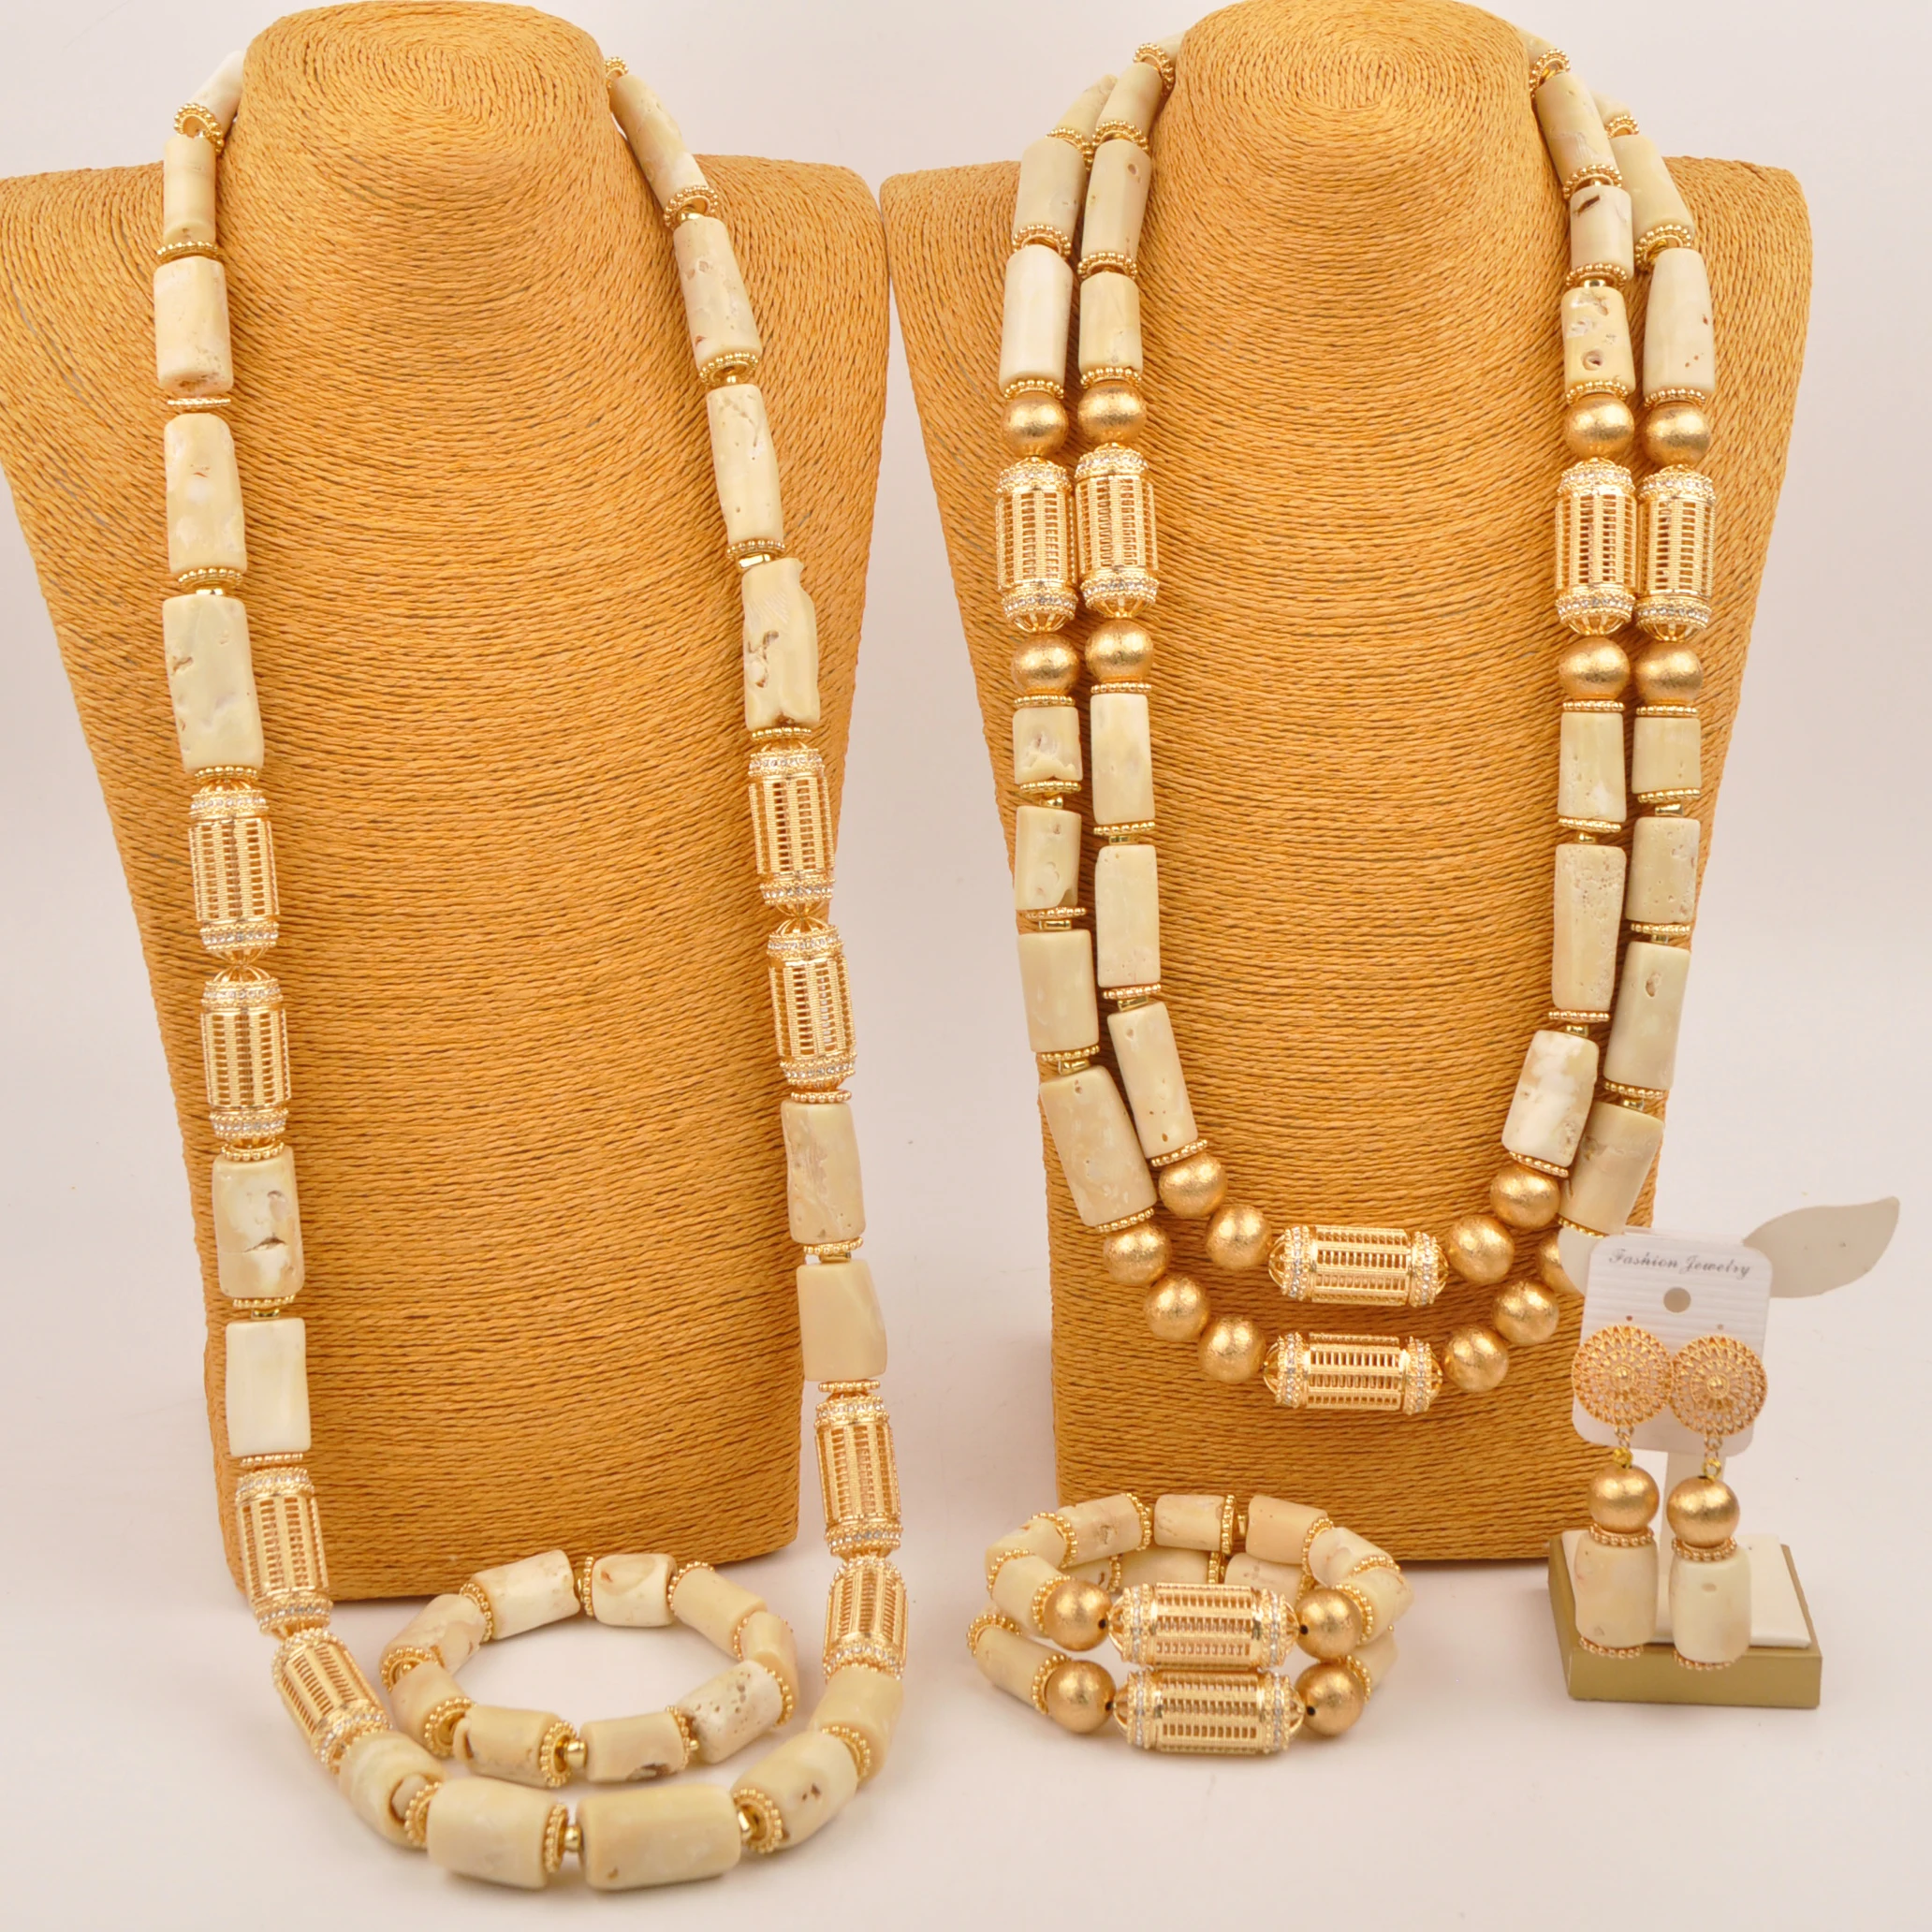 

Африканское ожерелье нигерийский Свадебный коралловый бисер комплект ювелирных изделий для пары